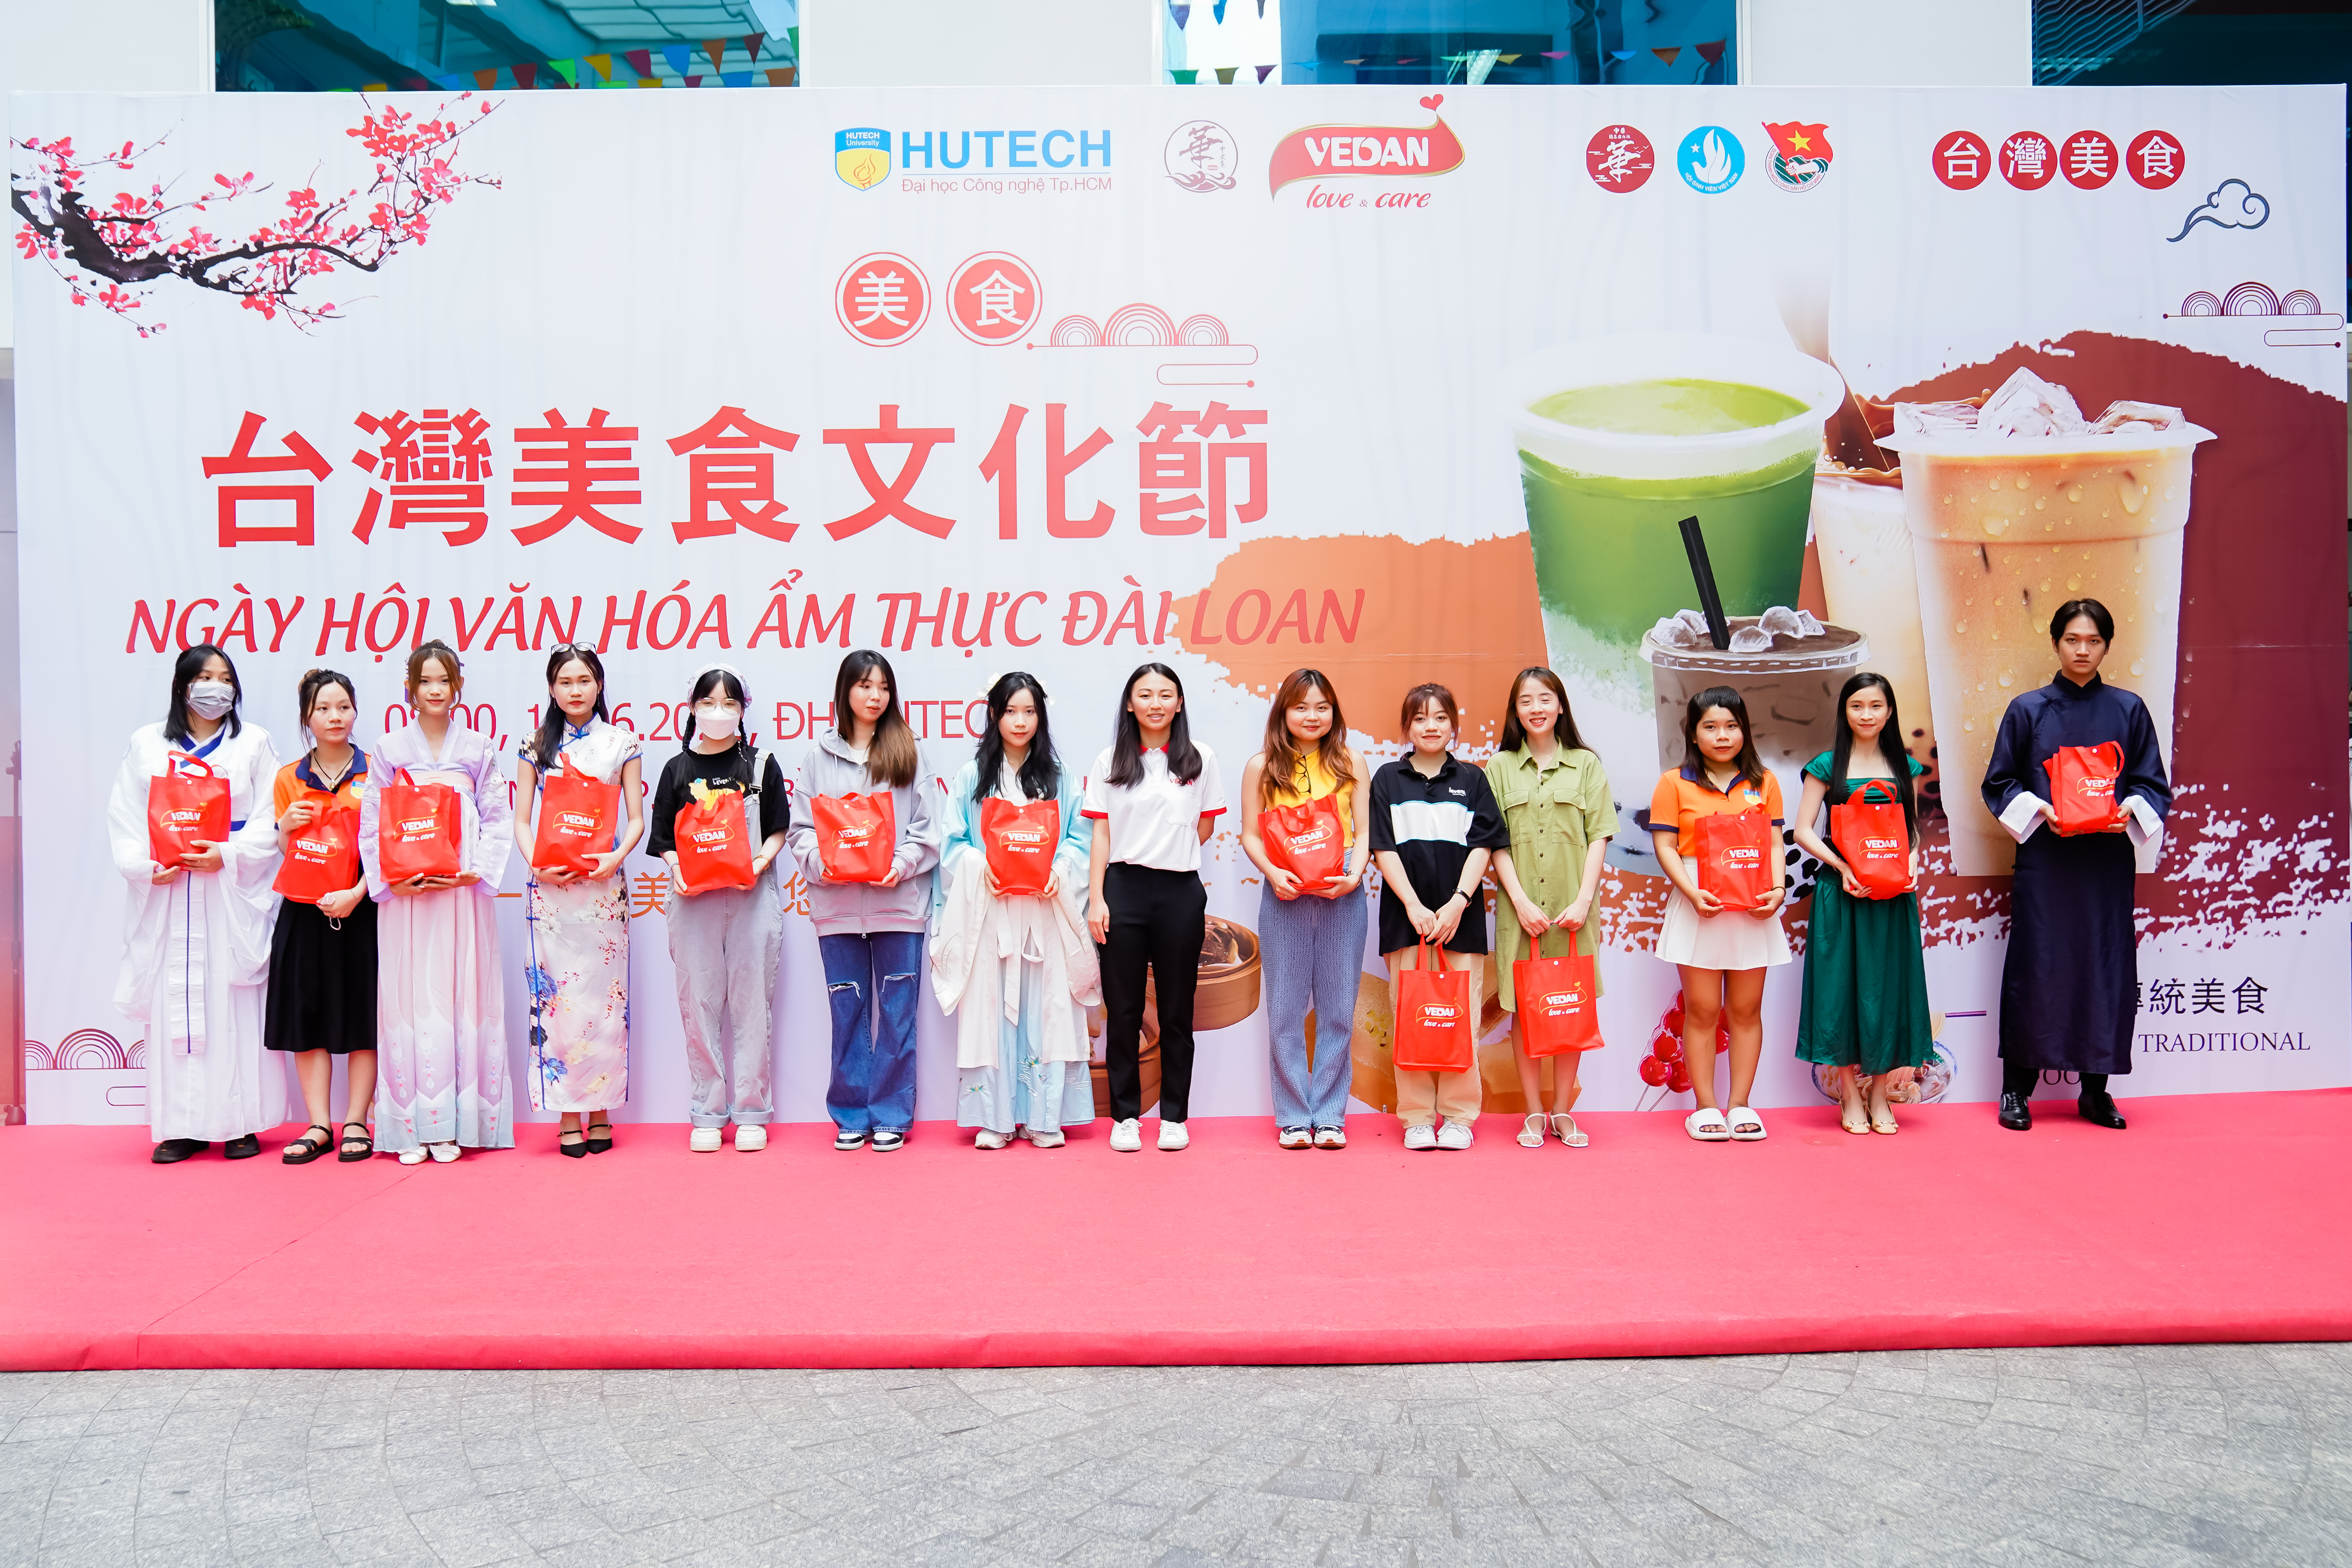 Sức hút từ sự kiện “Ngày hội văn hóa ẩm thực Đài Loan” do Khoa Trung Quốc Học tổ chức 180